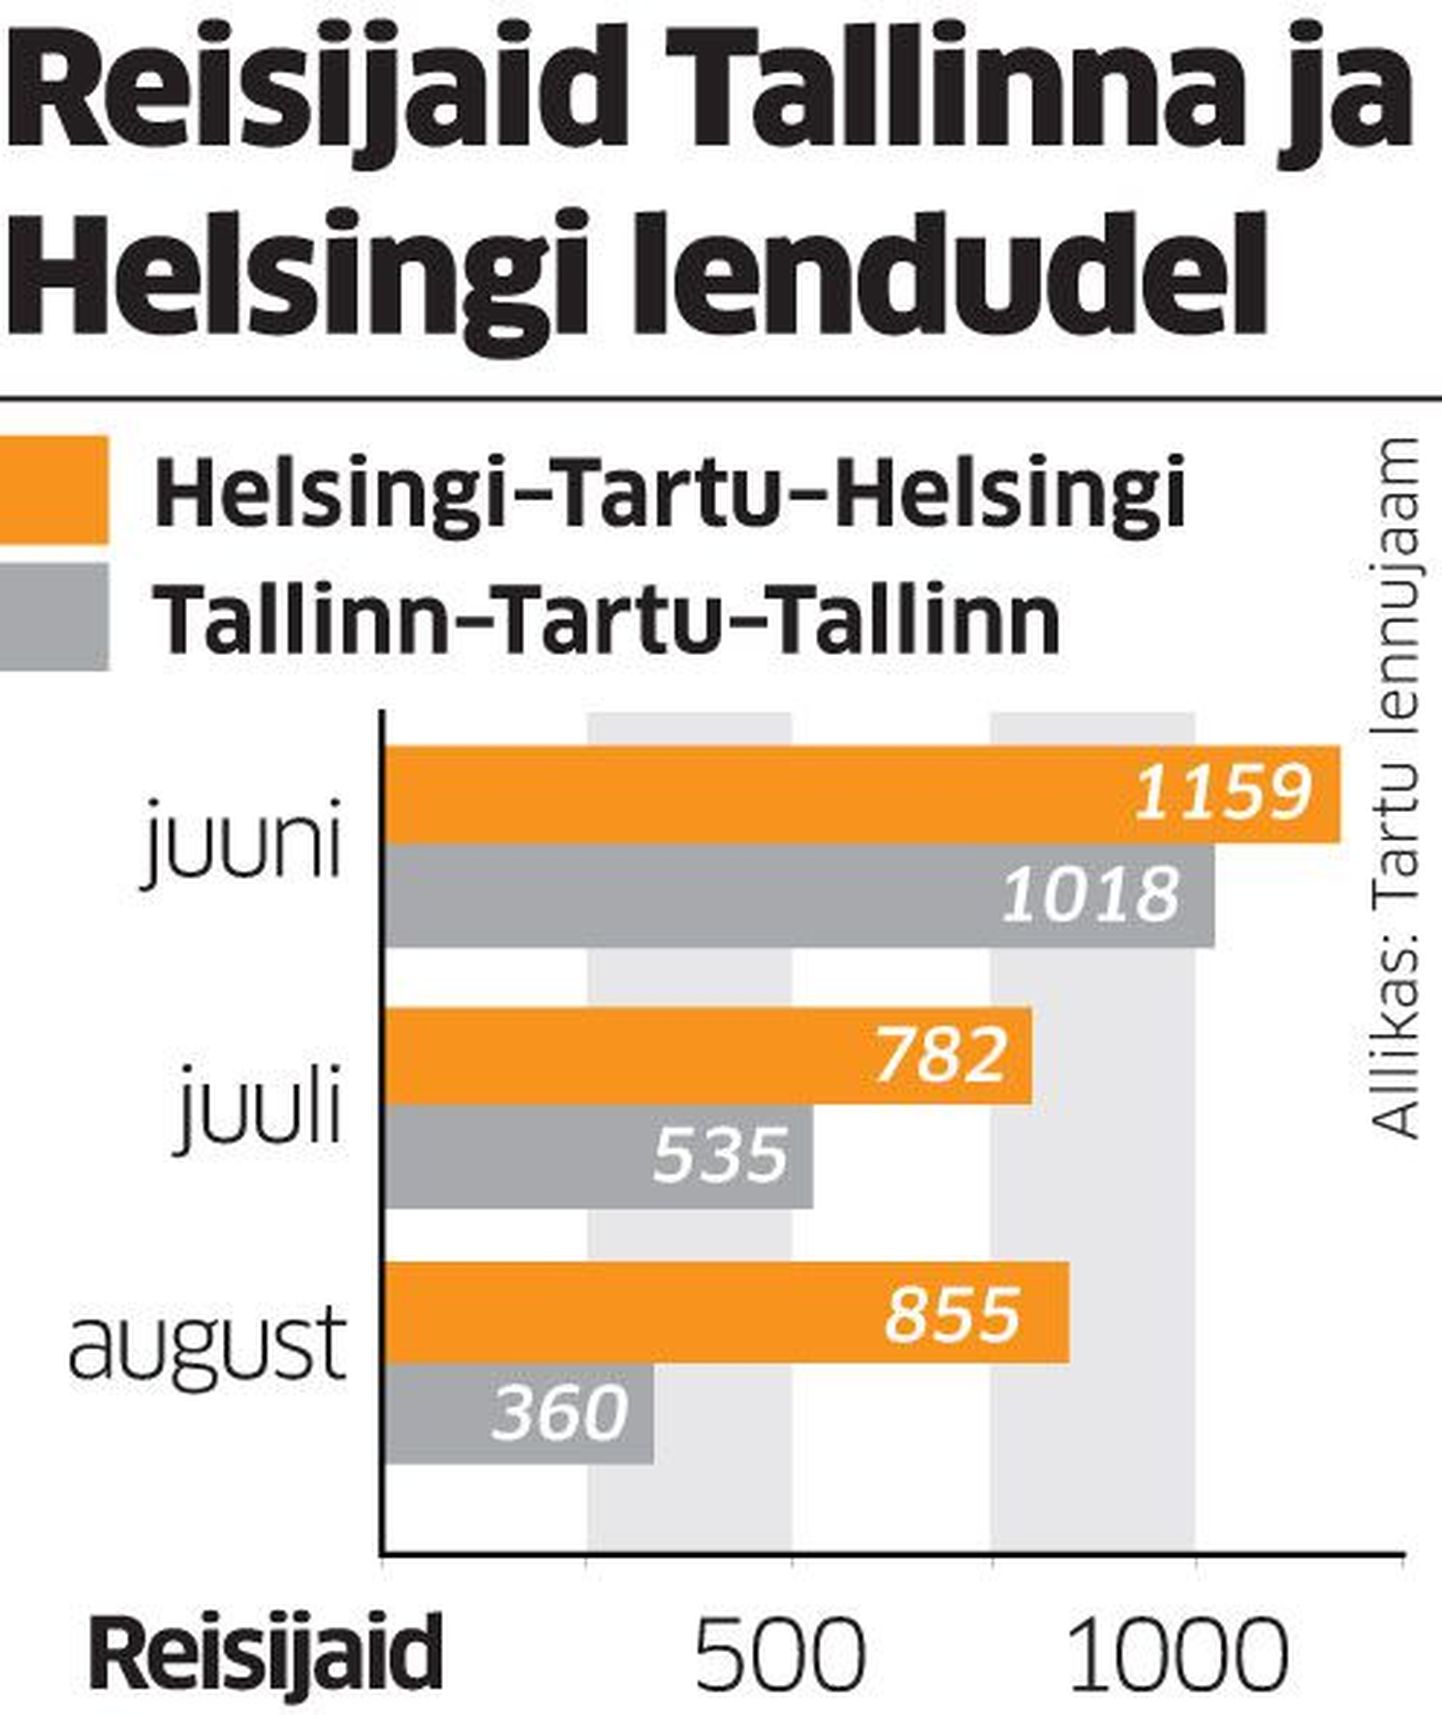 Reisijad Tallinna ja Helsingi lendudel.